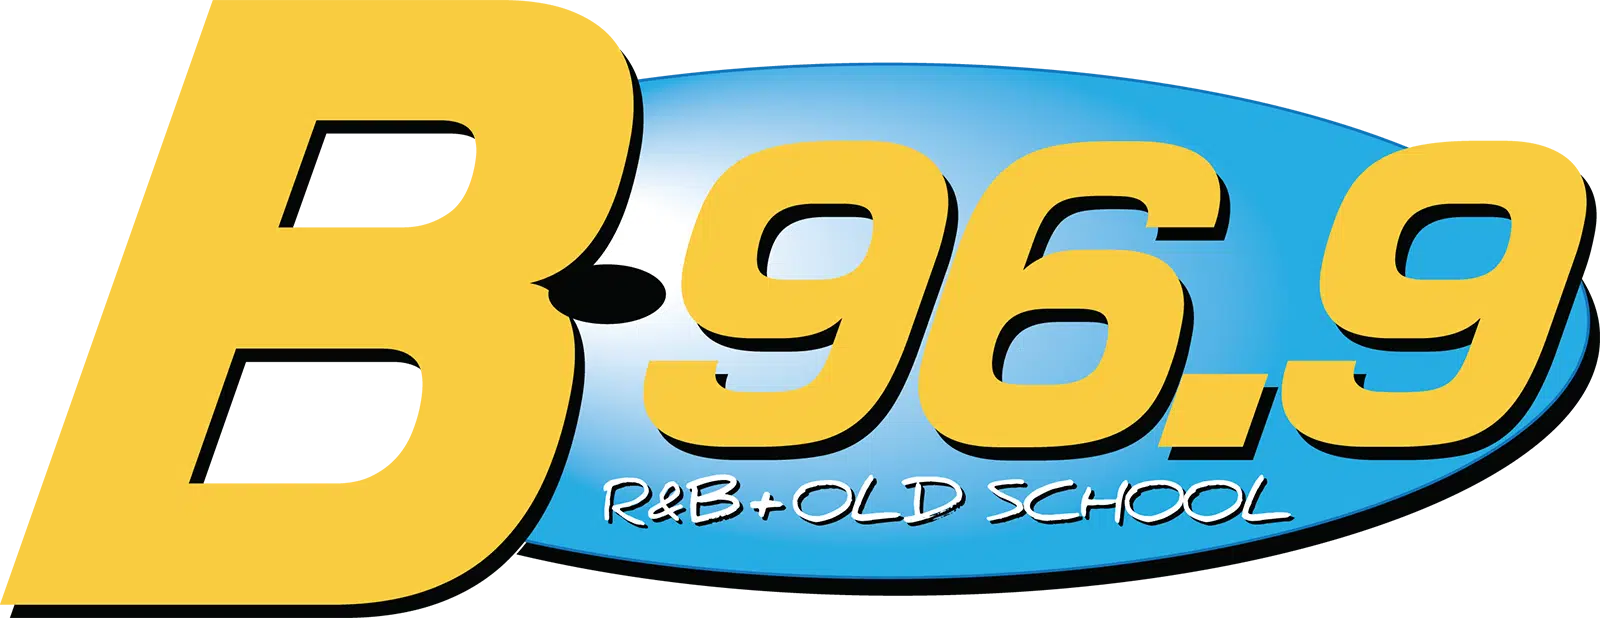 B96.9 R&B + Old School